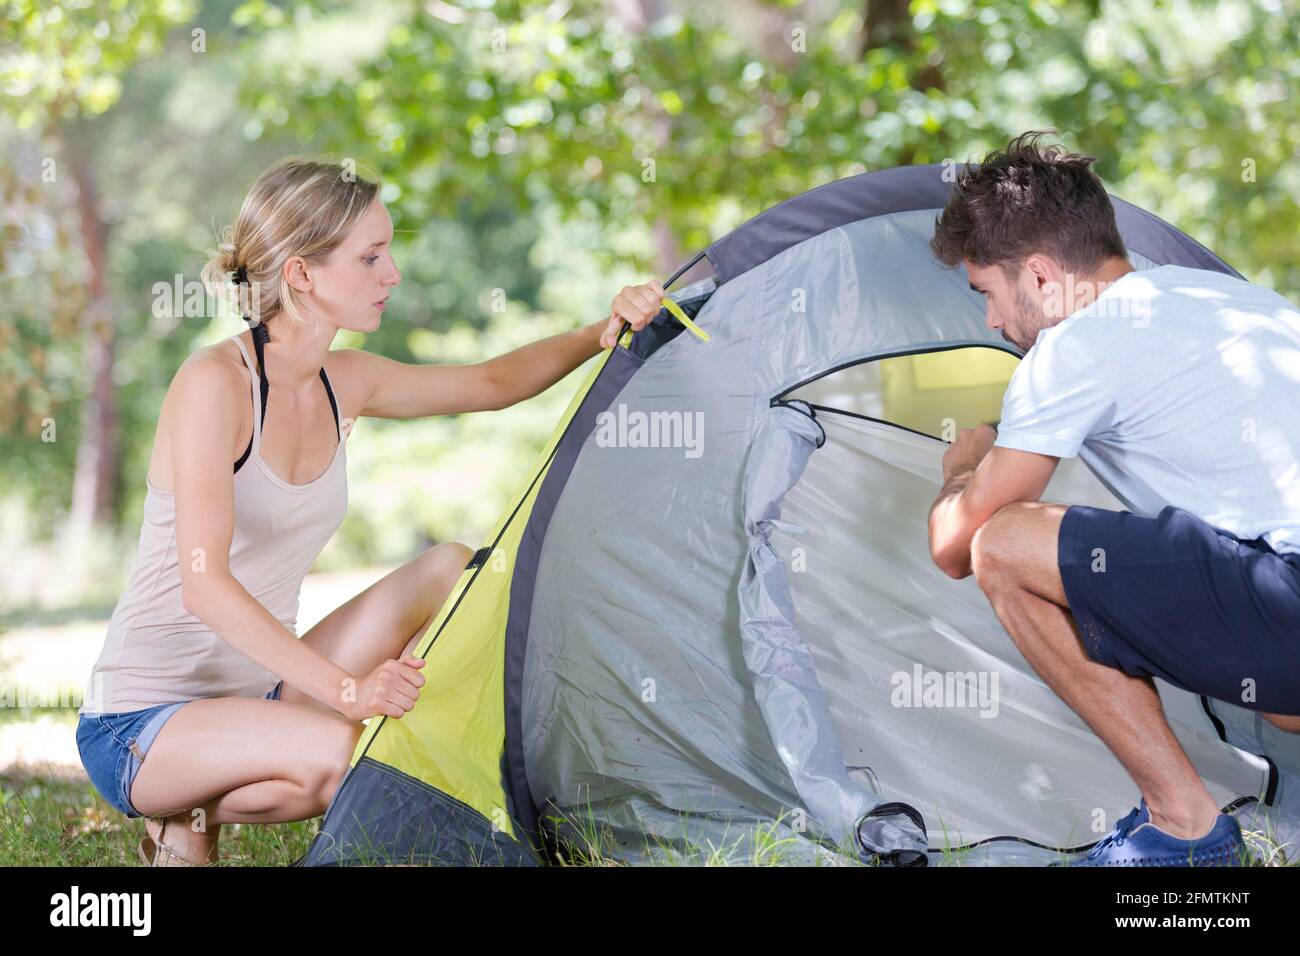 Junge Camper beim Aufstellen des Zeltes am Wald Stockfoto